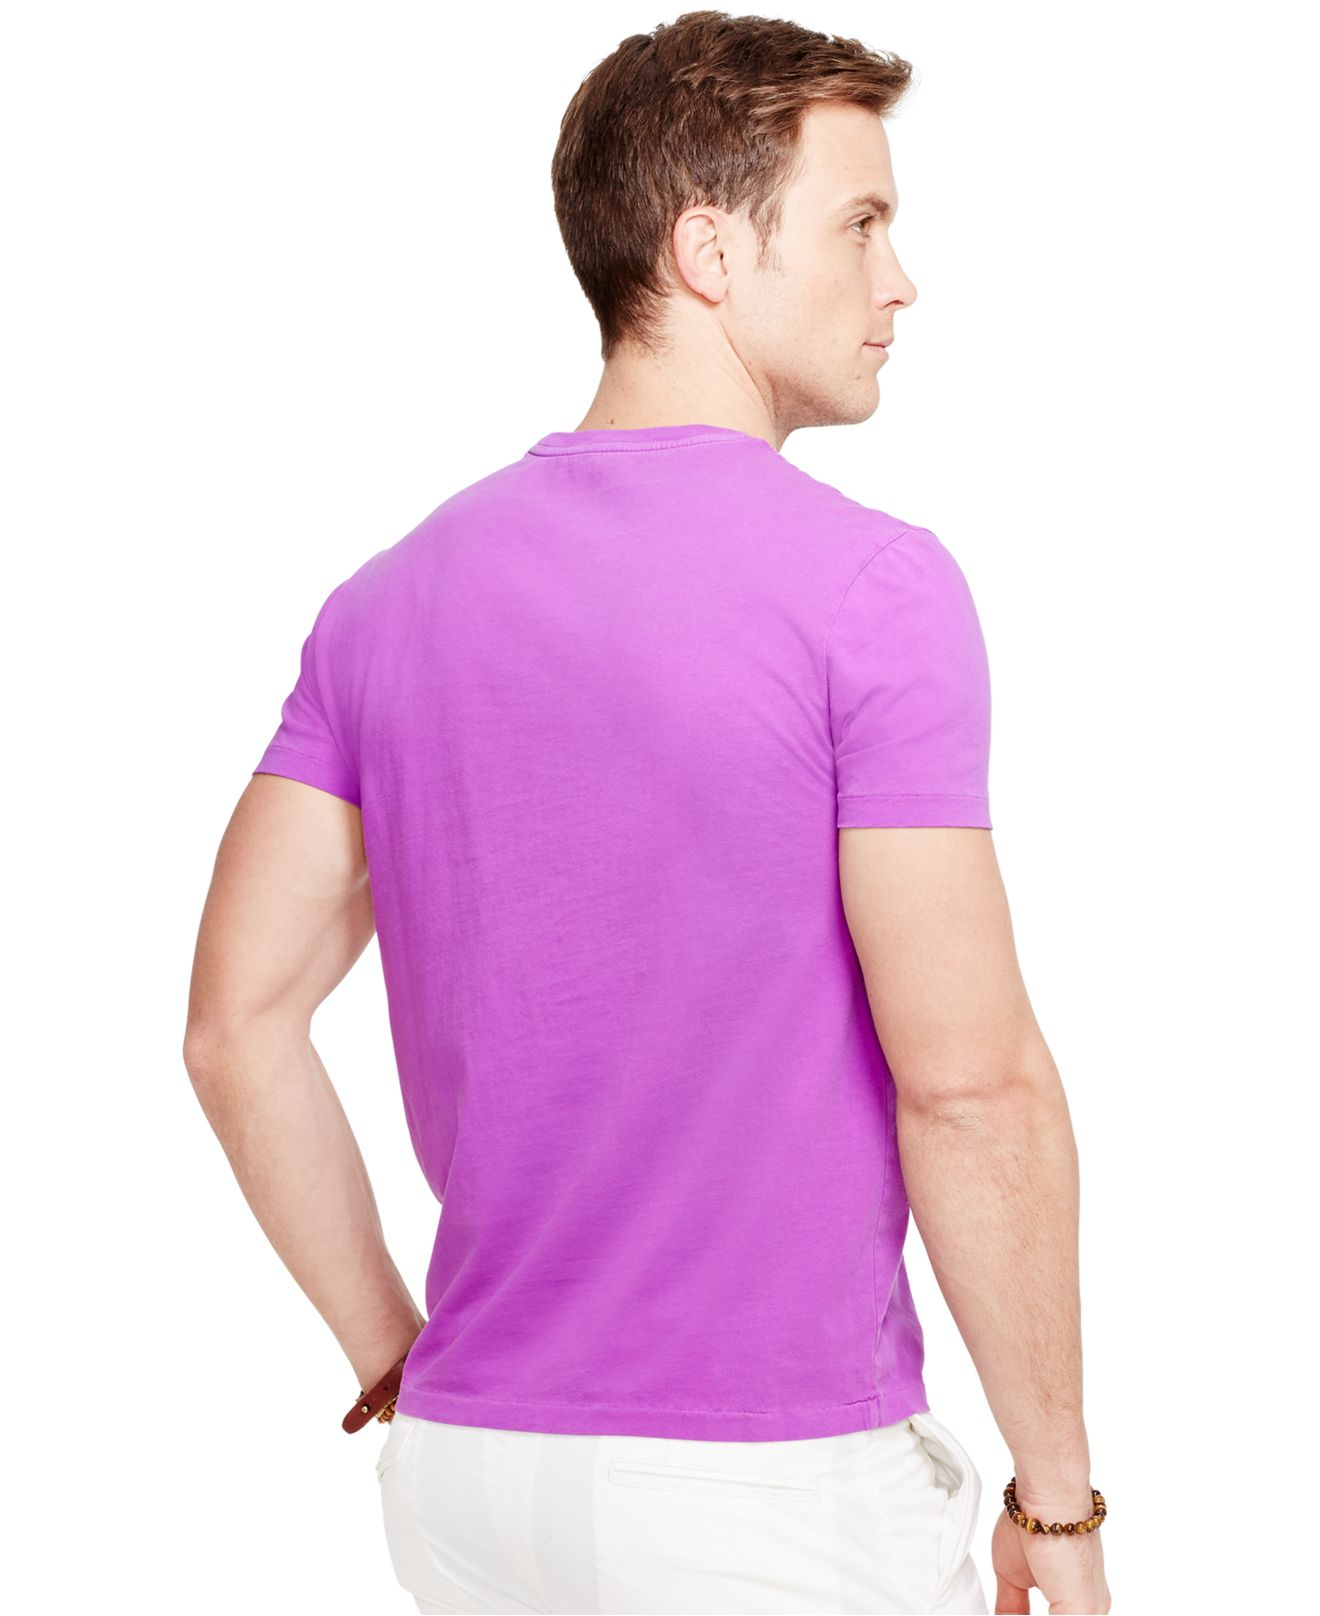 Lyst - Polo Ralph Lauren Custom-fit Neon Jersey Crewneck in Purple for Men